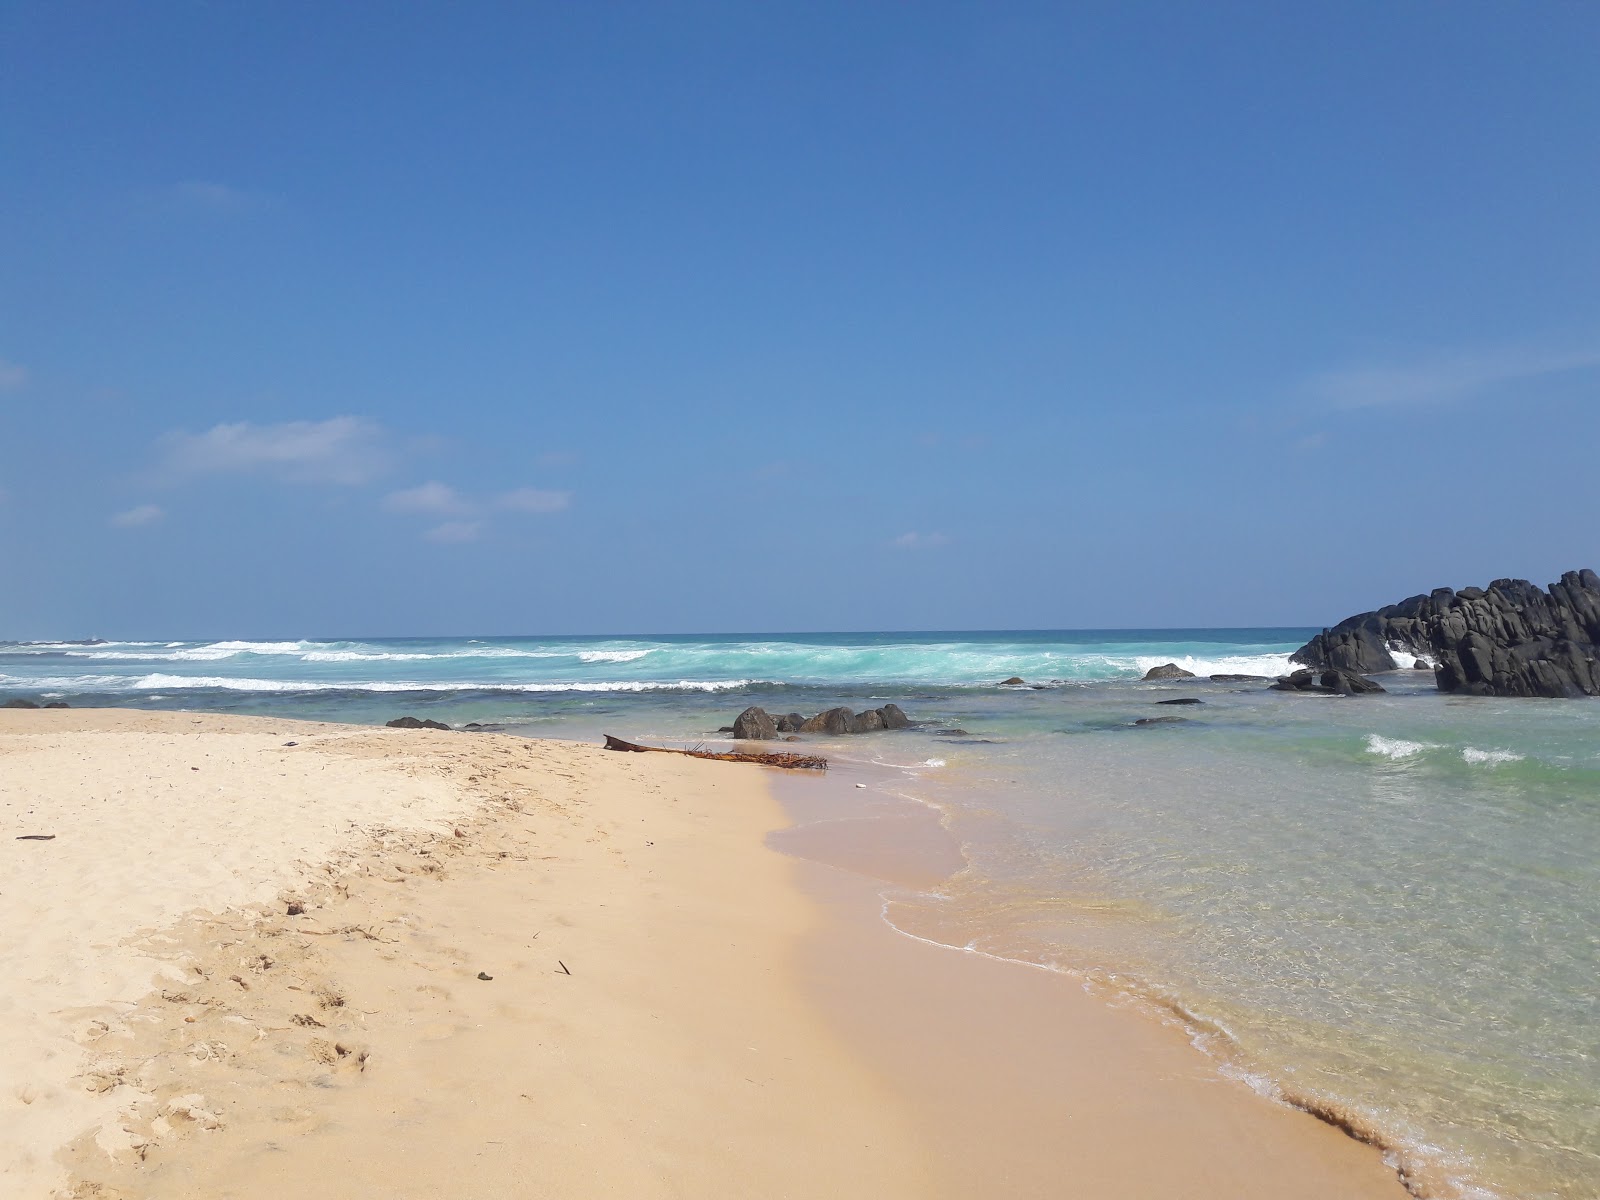 Foto af Dalawella Beach - populært sted blandt afslapningskendere